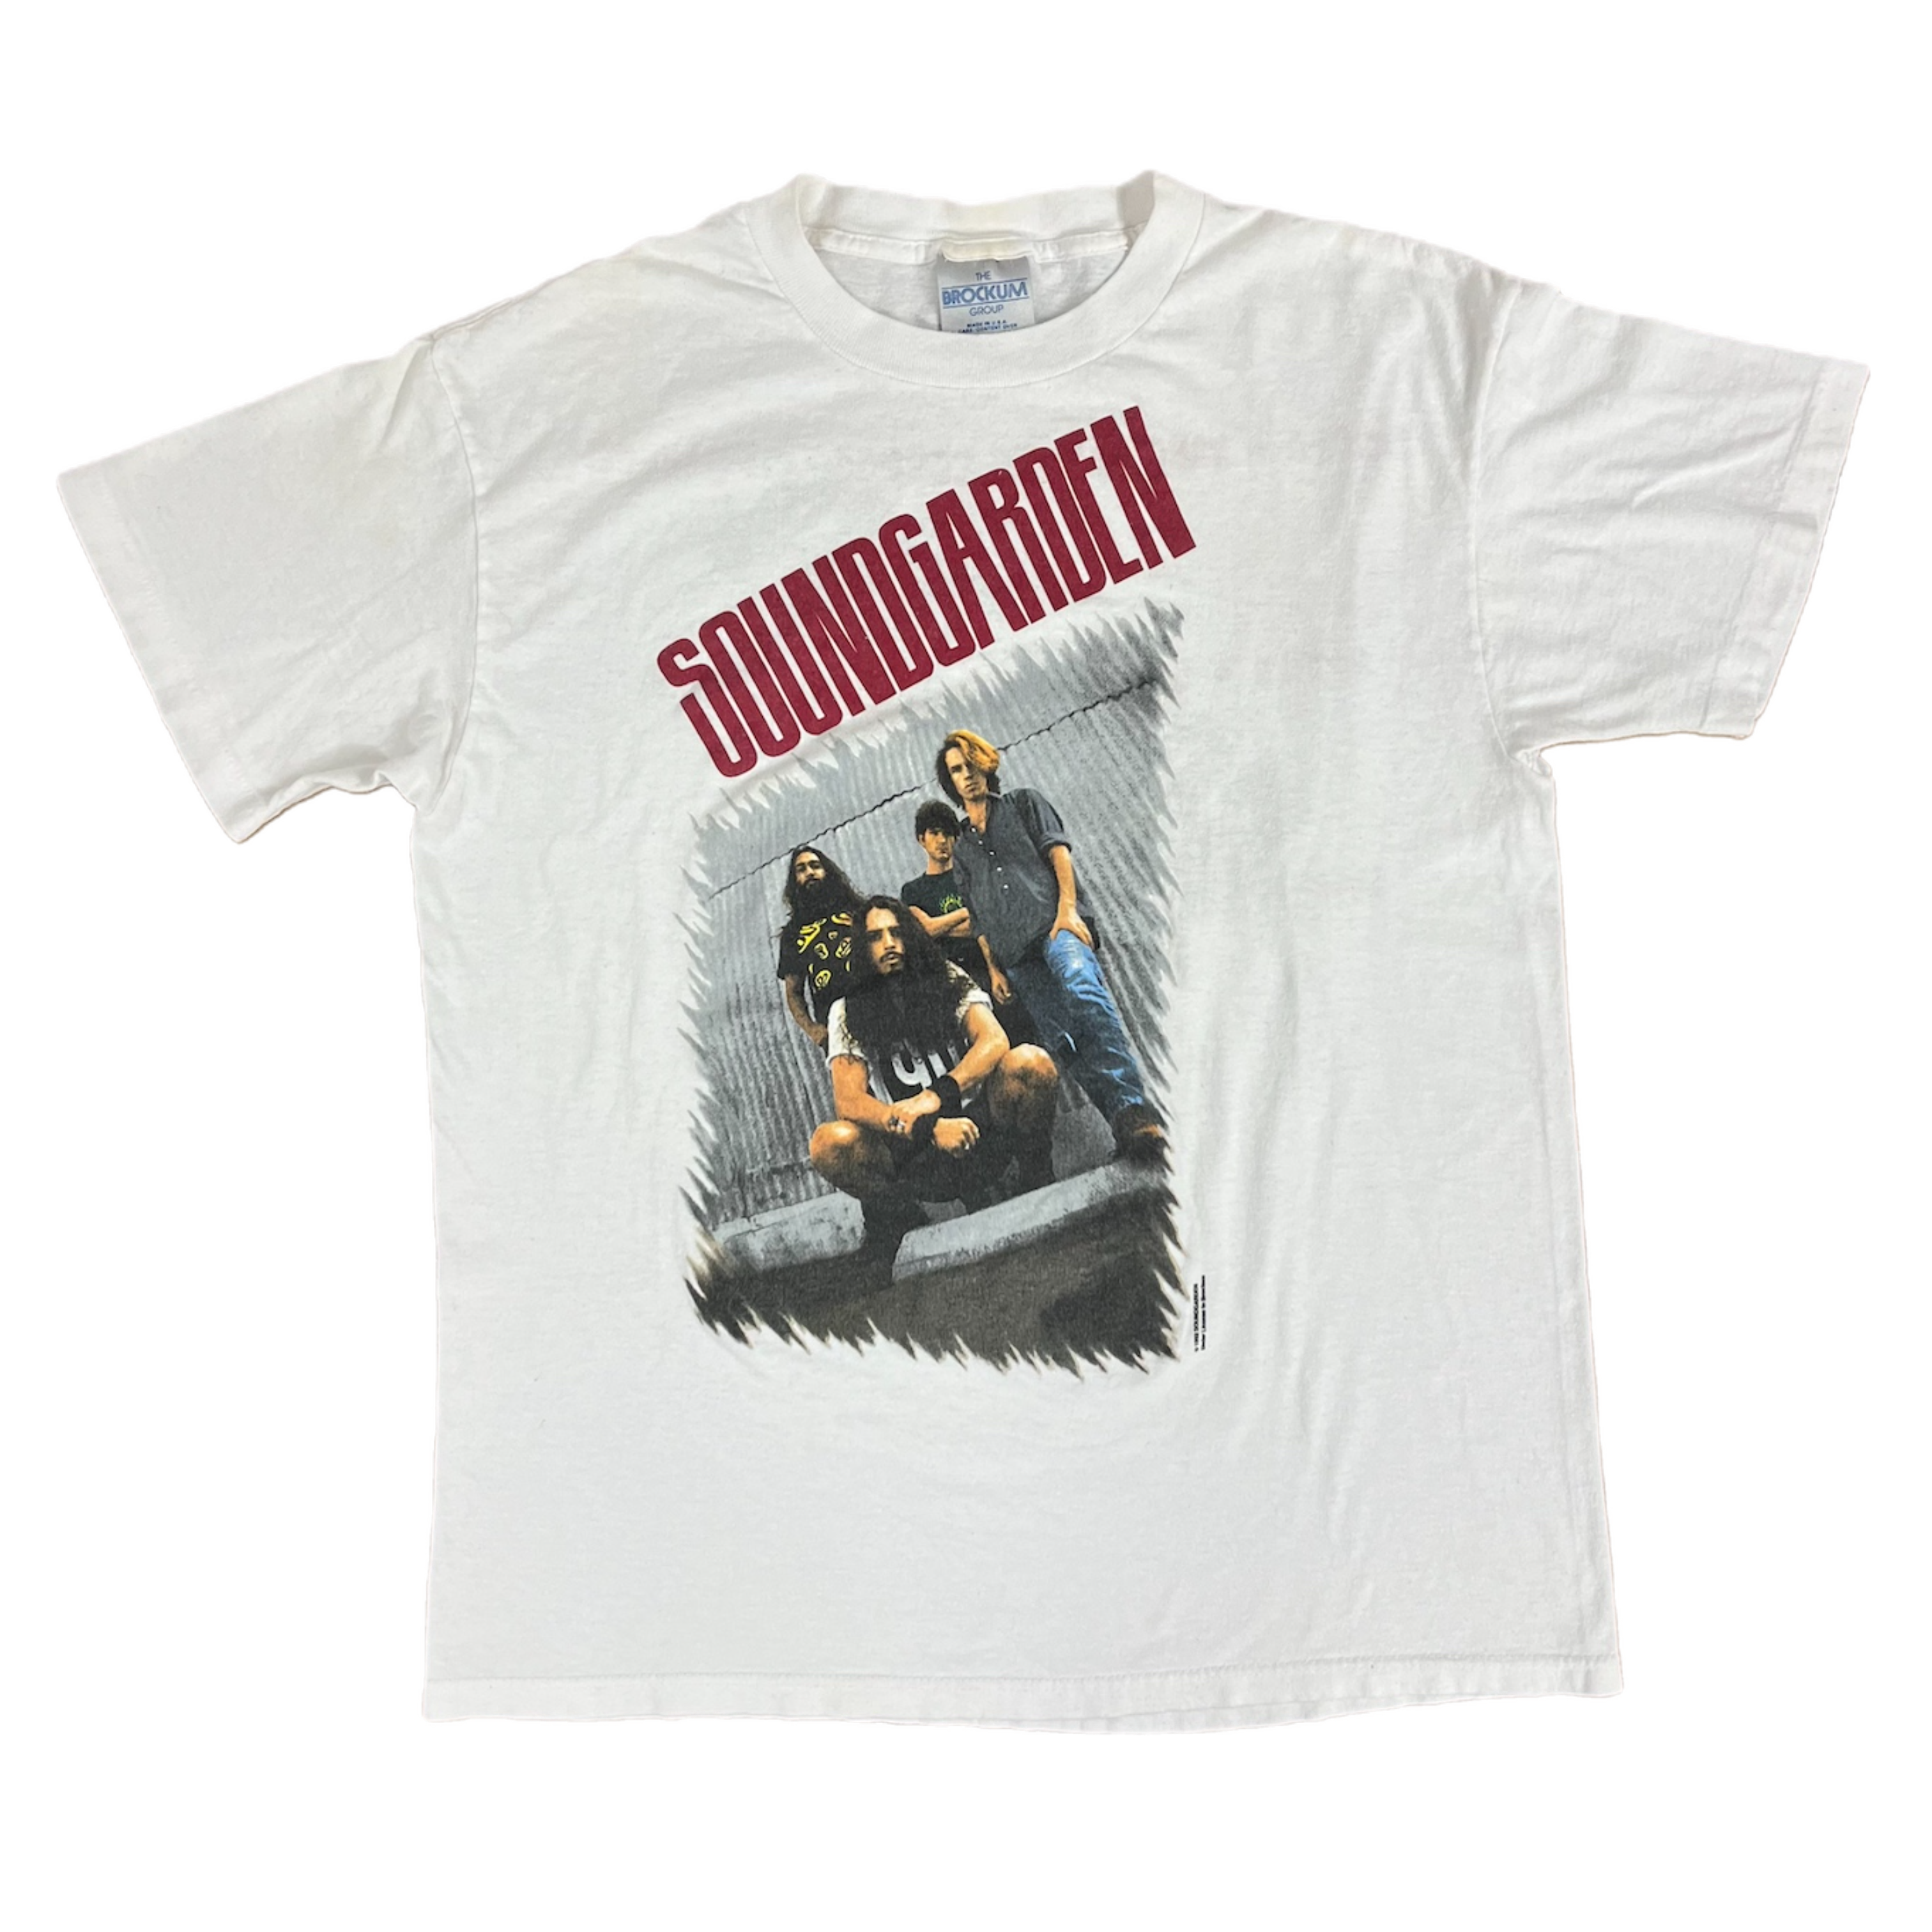 SOUNDGARDENサウンドガーデンpushead 1994年Tシャツ